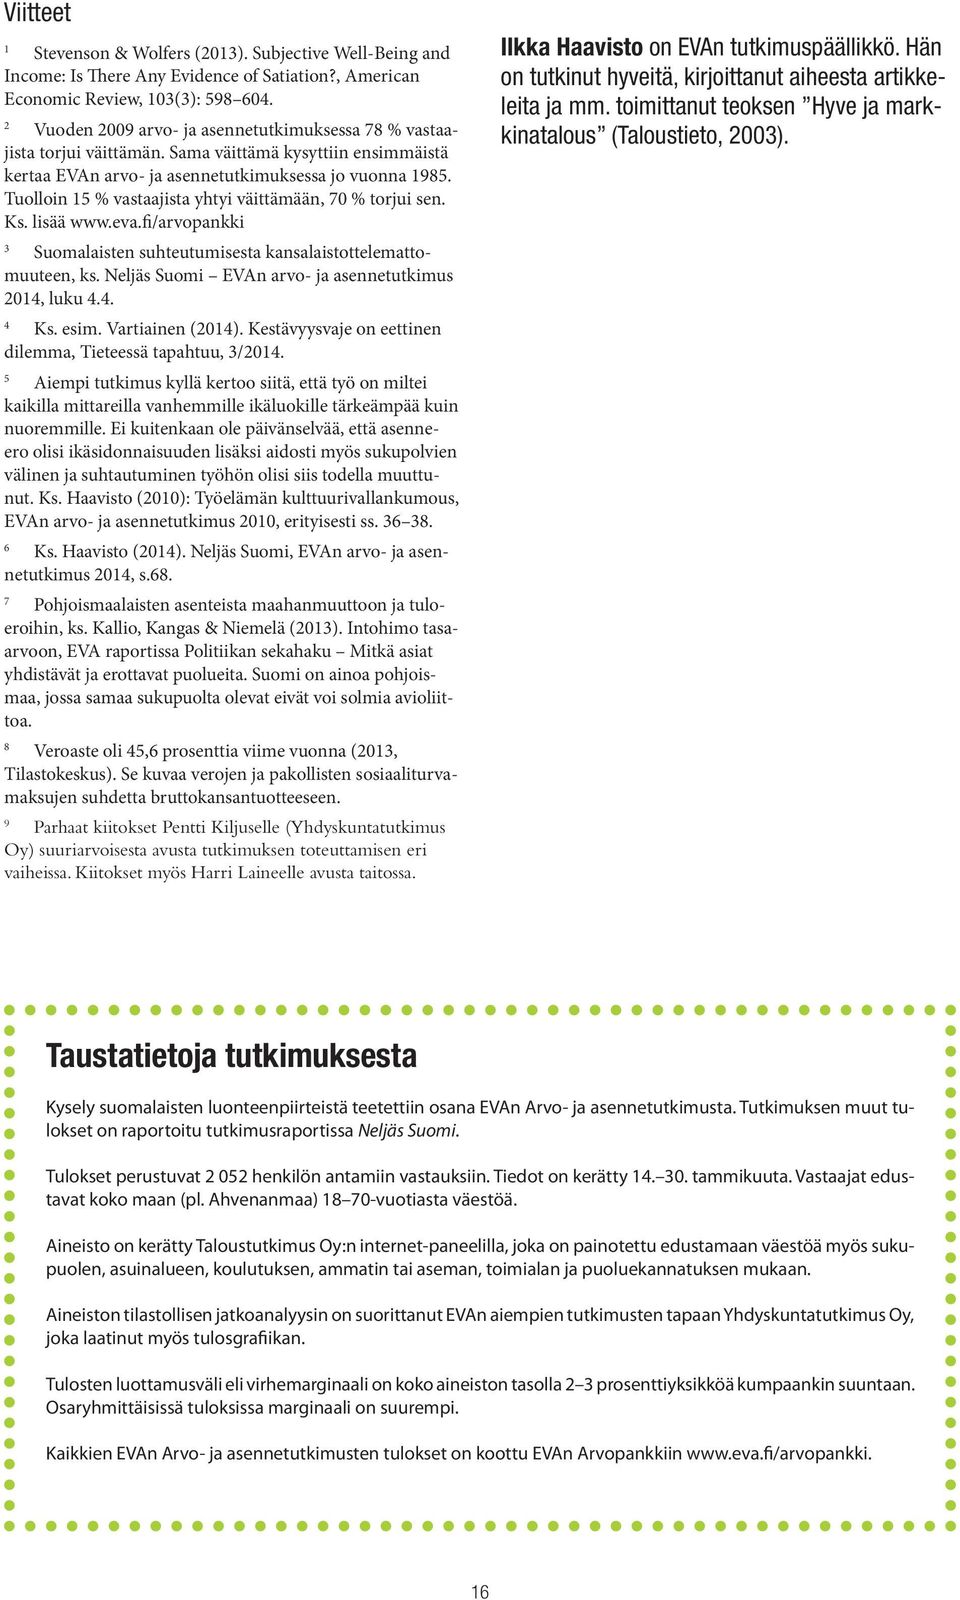 Tuolloin 15 vastaajista yhtyi väittämään, 70 torjui sen. Ks. lisää www.eva.fi/arvopankki 3 Suomalaisten suhteutumisesta kansalaistottelemattomuuteen, ks.